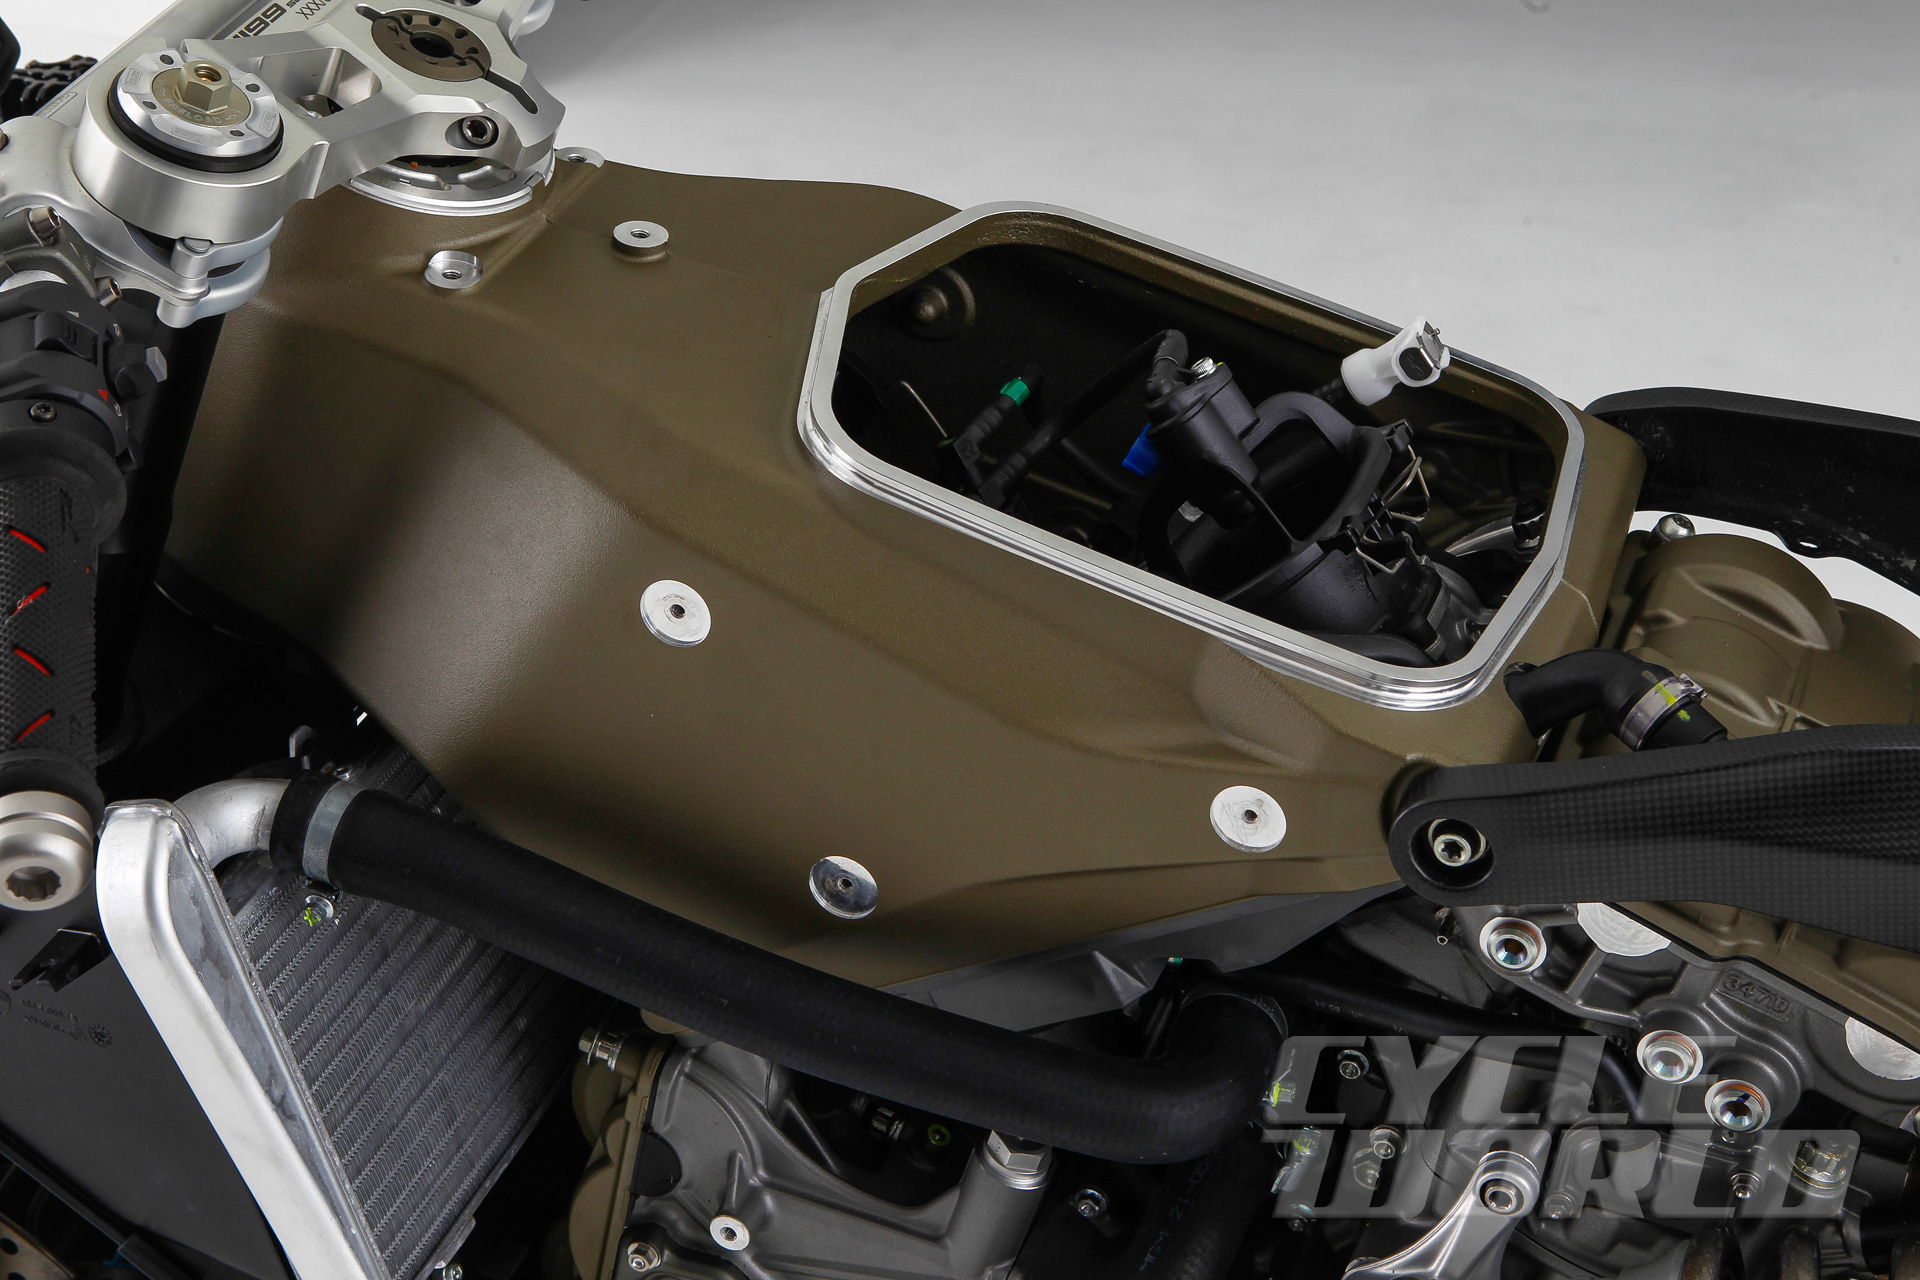 Ducati-Superleggera-detail-383.jpg